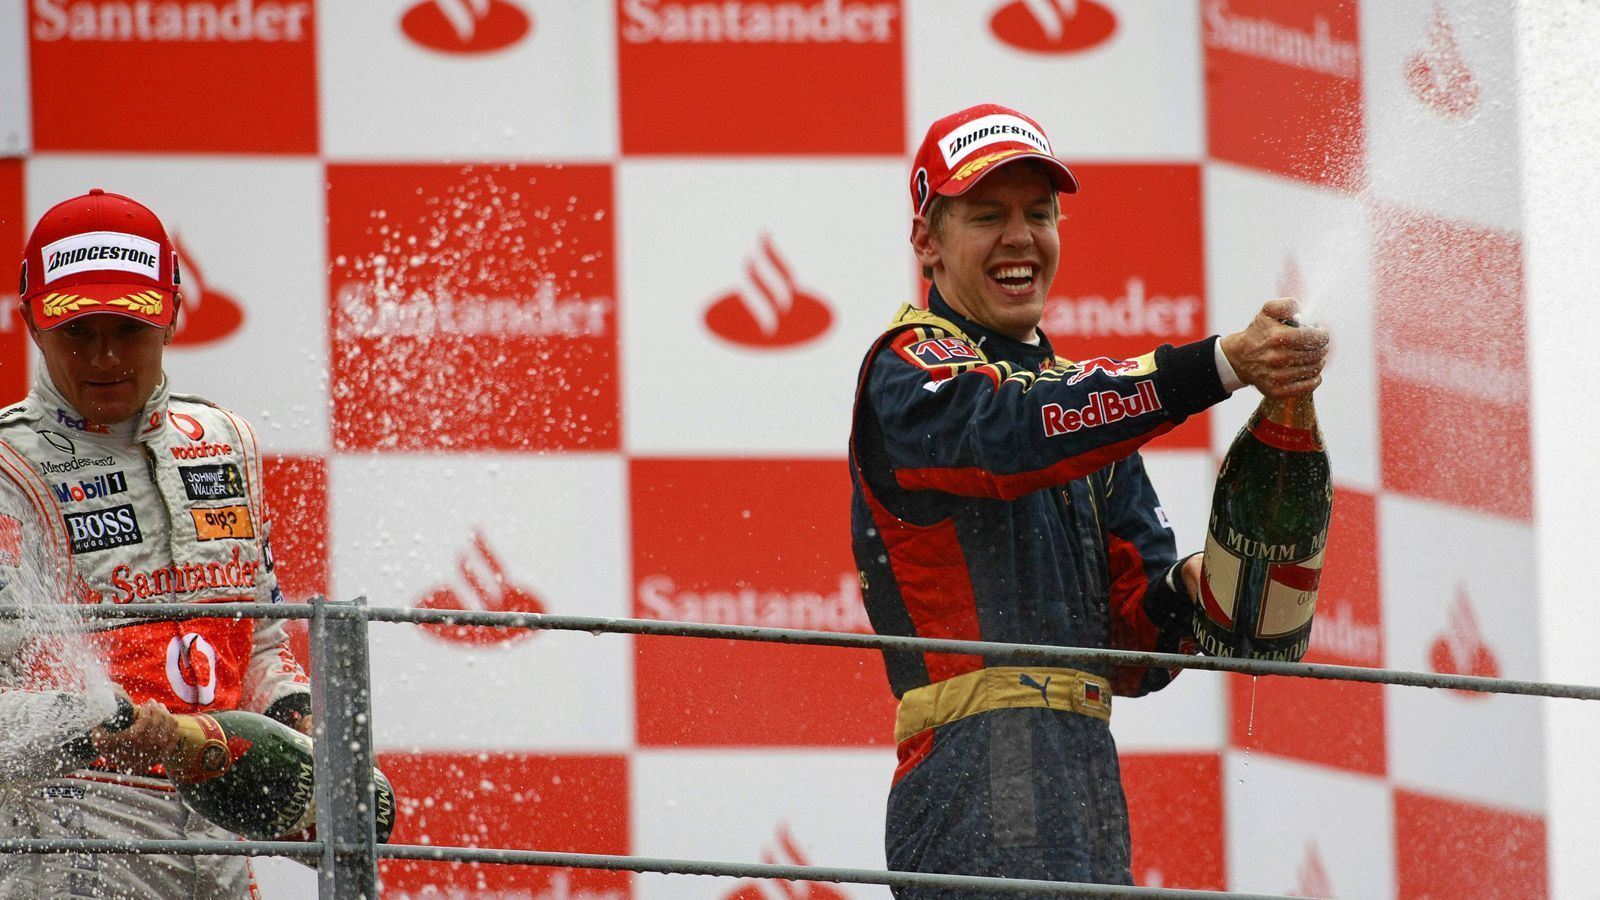 
                <strong>Märchenhaftes Wochenende im regnerischen Monza</strong><br>
                Einmal mehr gab Vettel Gas, feierte 2008 als 21-Jähriger im Regen von Monza als jüngster Fahrer der Geschichte seinen ersten Sieg - die Beförderung zu Red Bull Racing zur Saison 2009 war die logische Folge.
              